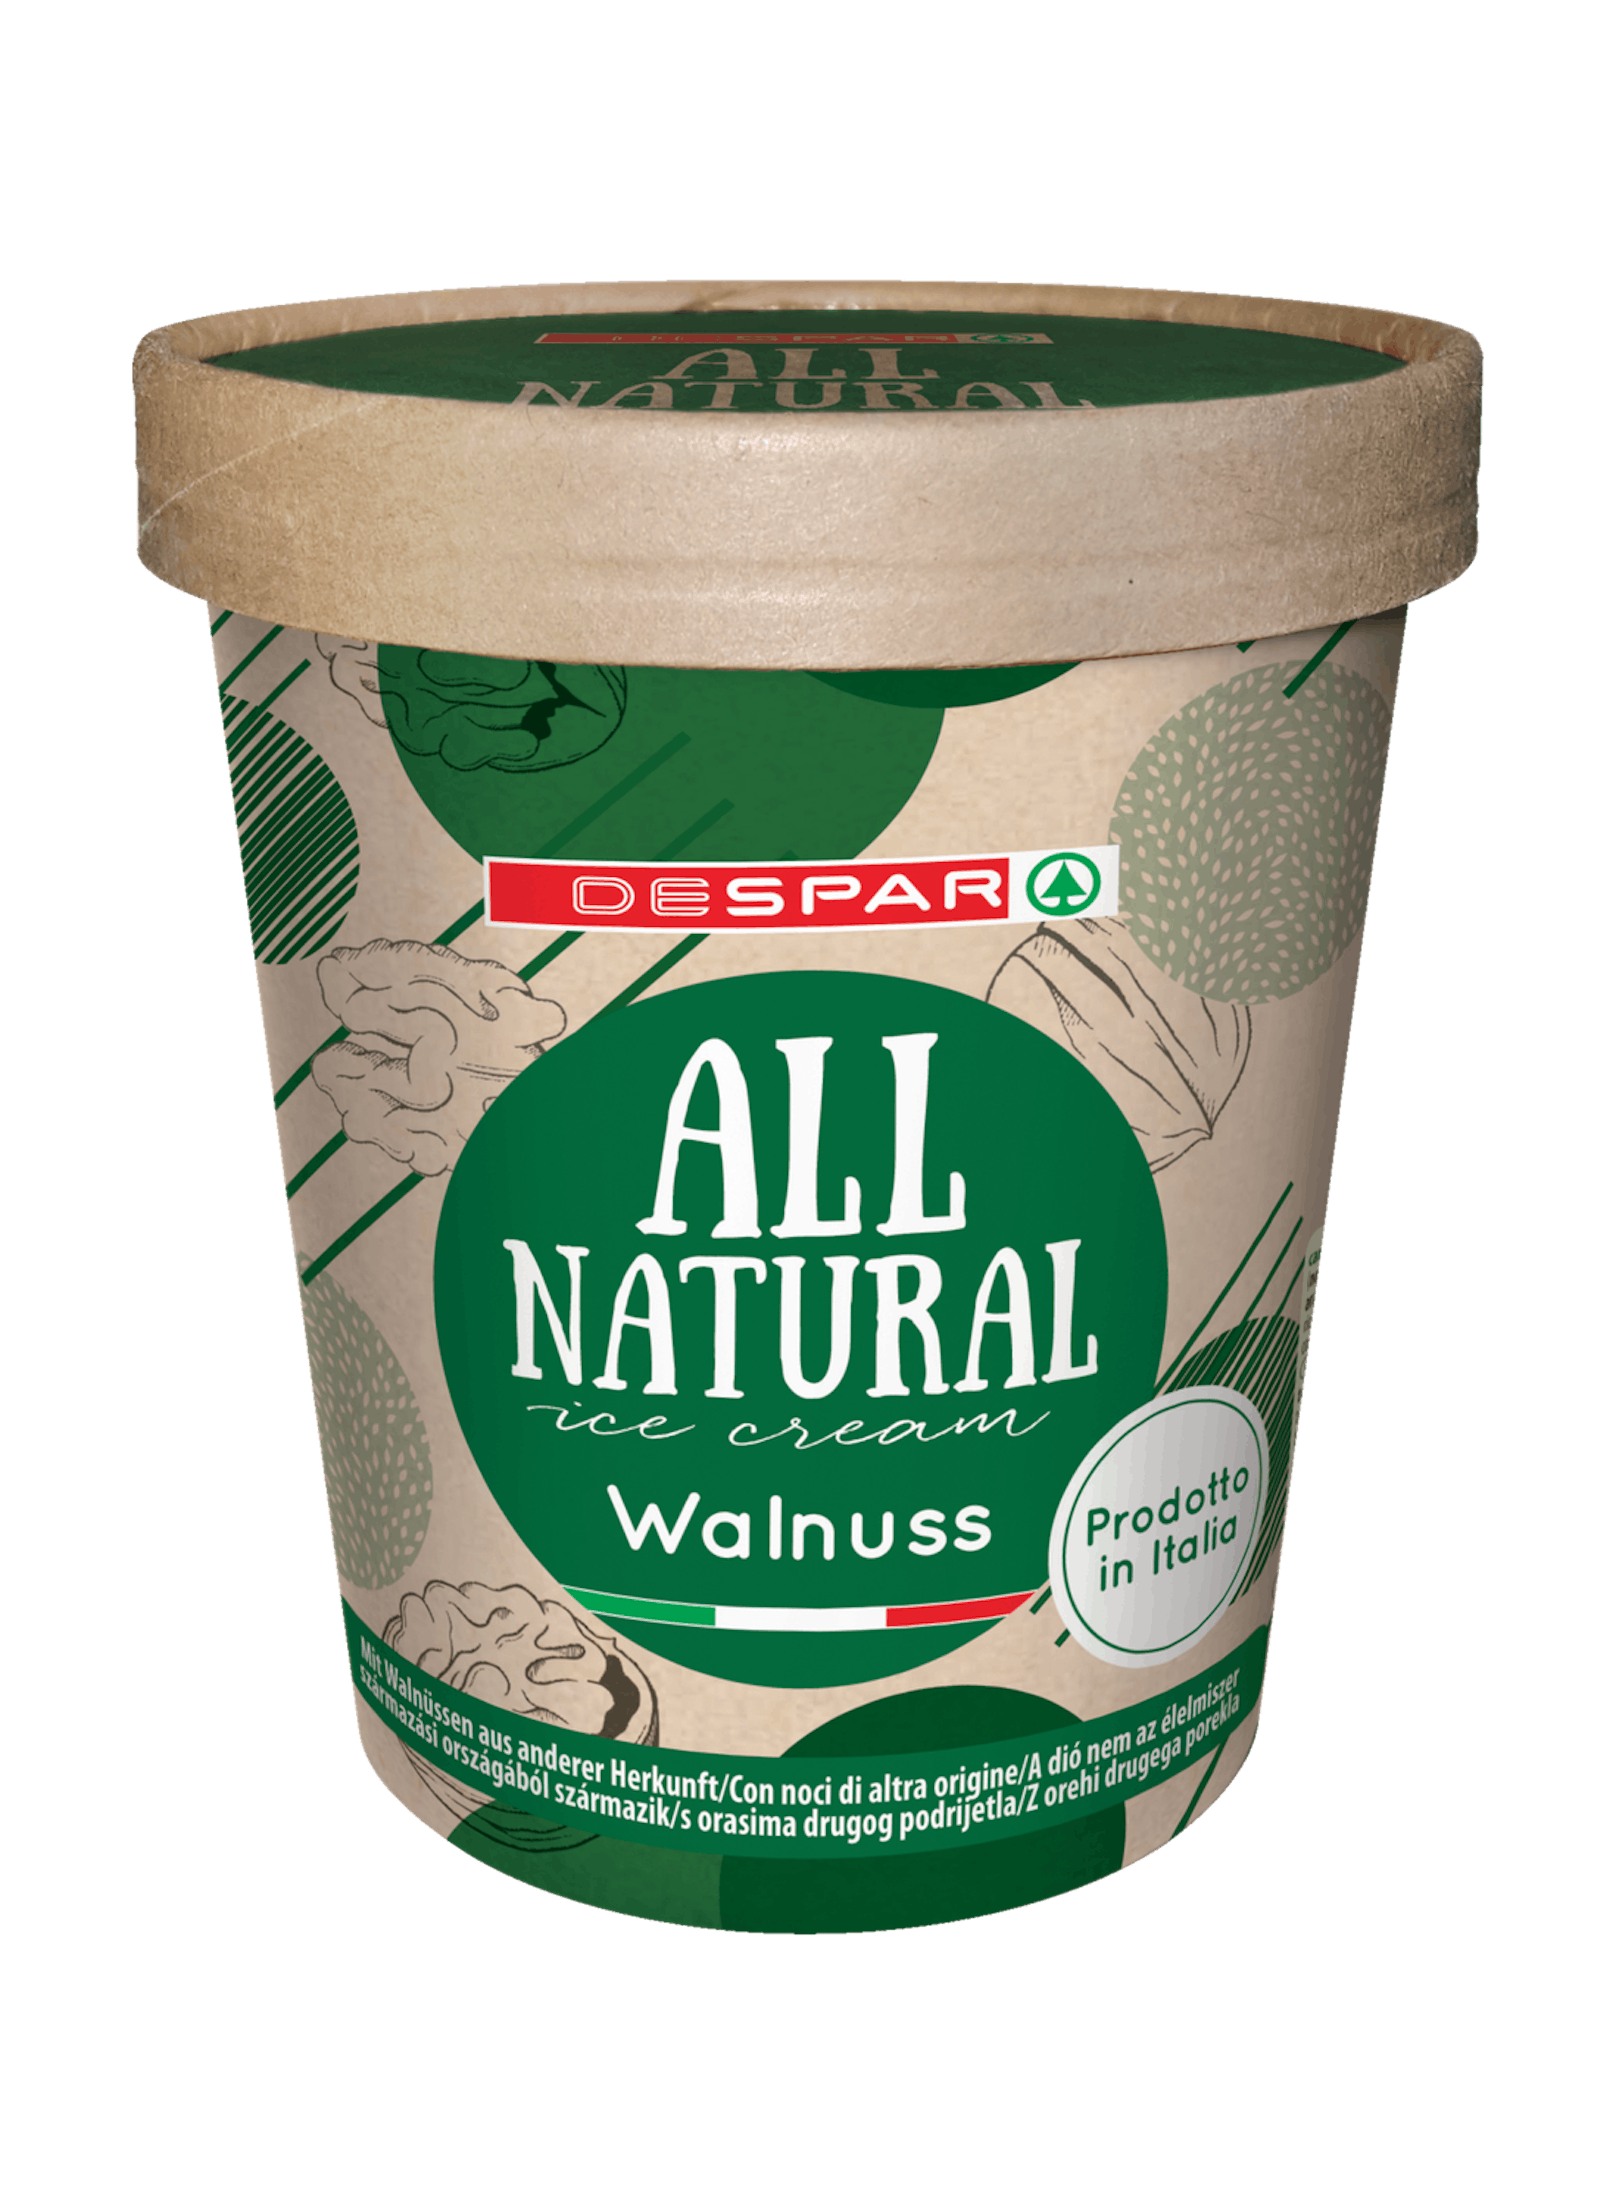 Spar All Natural ist mit zwei neuen Eissorten dabei: ,"Walnuss" und "Crema Catalana" sind für 4,29 Euro erhältlich.